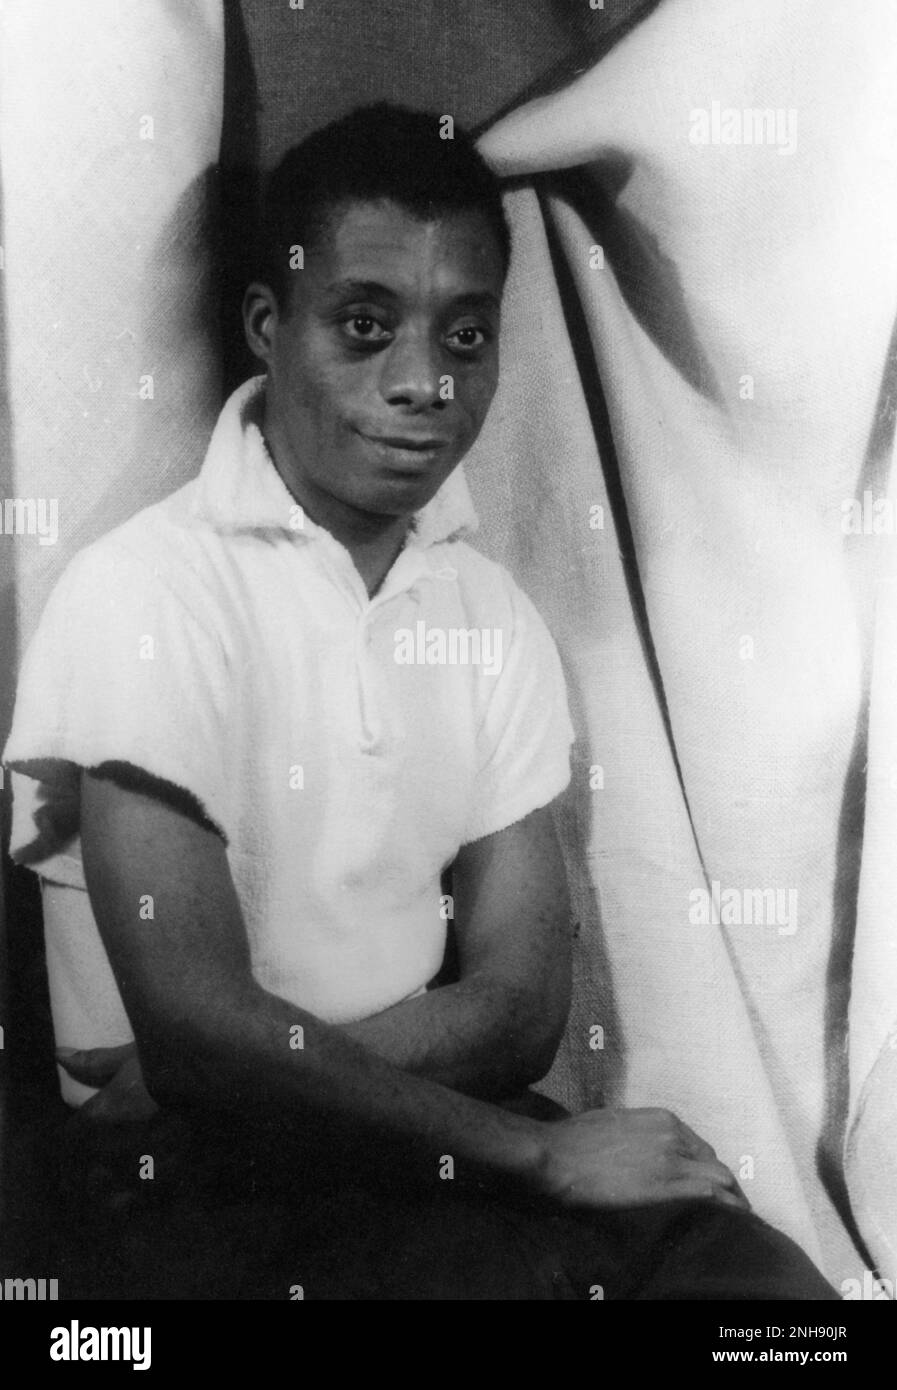 Amerikanischer Schriftsteller und Aktivist James Baldwin (1924-1987), fotografiert von Carl Van Vechten am 13. September 1955. Stockfoto